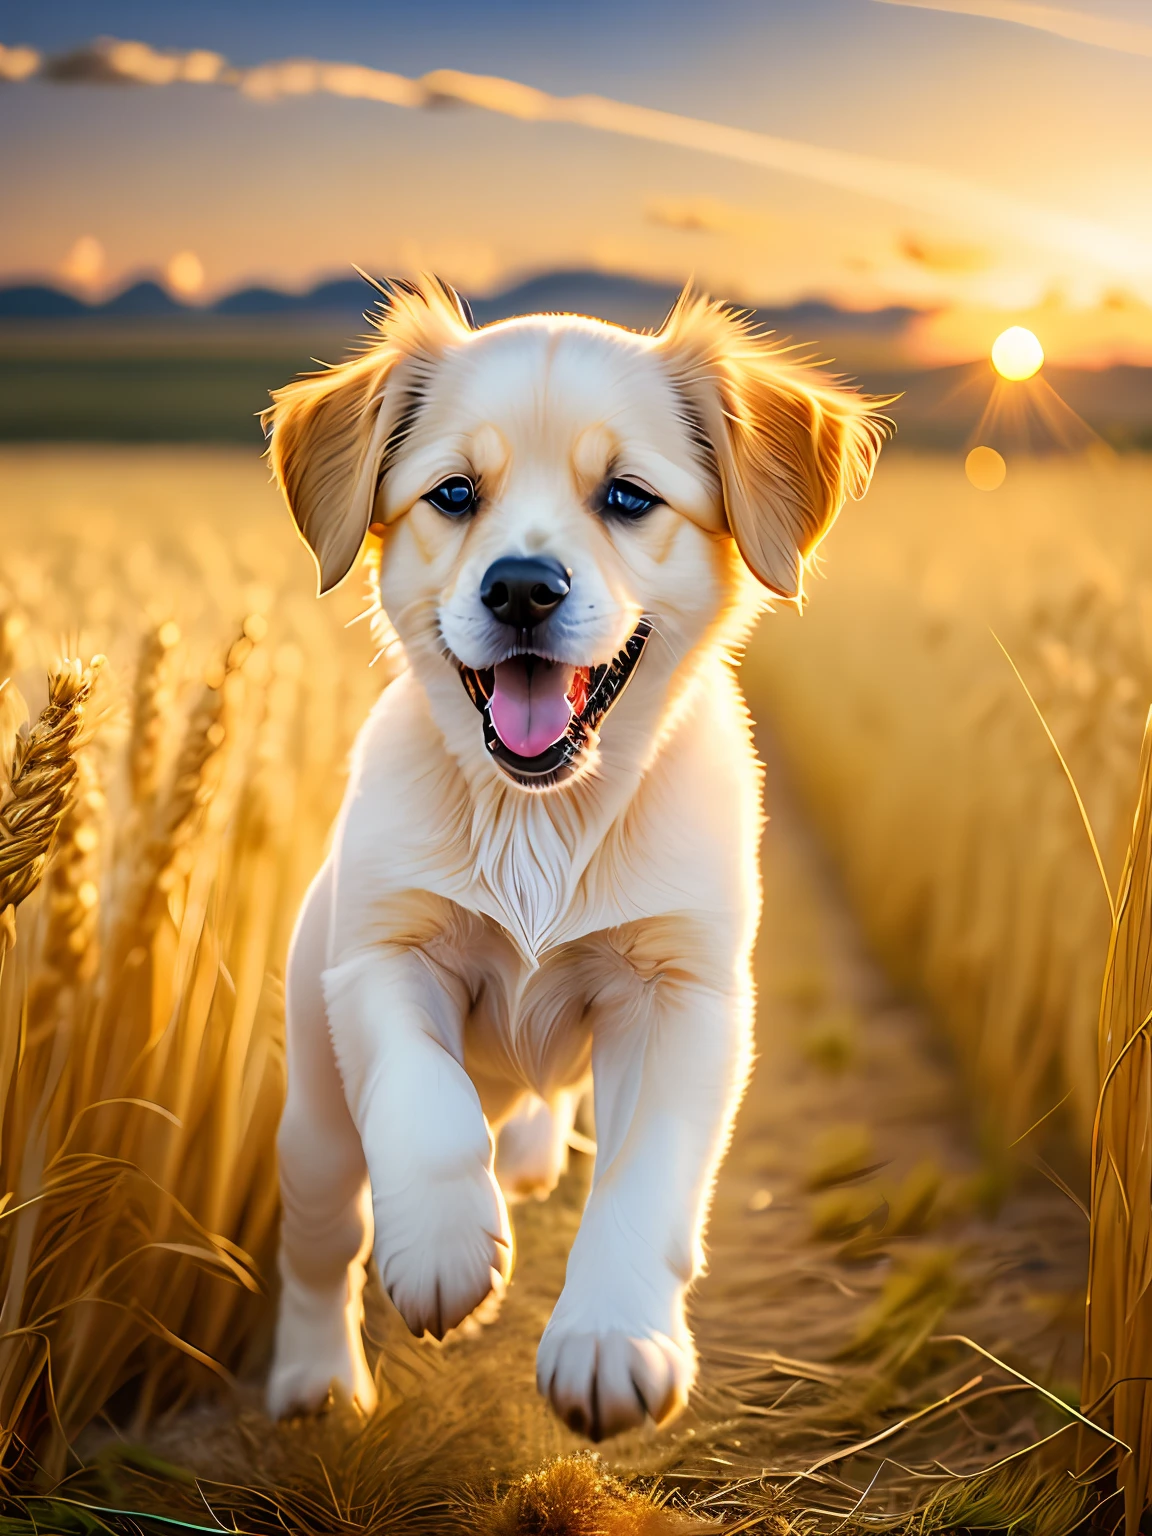 황금빛 밀밭에서 달리는 아주 귀여운 강아지 사진, 카메라를 향해, 혀를 보여주며 웃고 있다, 일몰 하늘, 흰 구름, 부드러운 체적 조명, (백라이트: 1.3), (영화: 1.2), 복잡한 세부 사항, (아트스테이션: 1.3), 루트코프스키